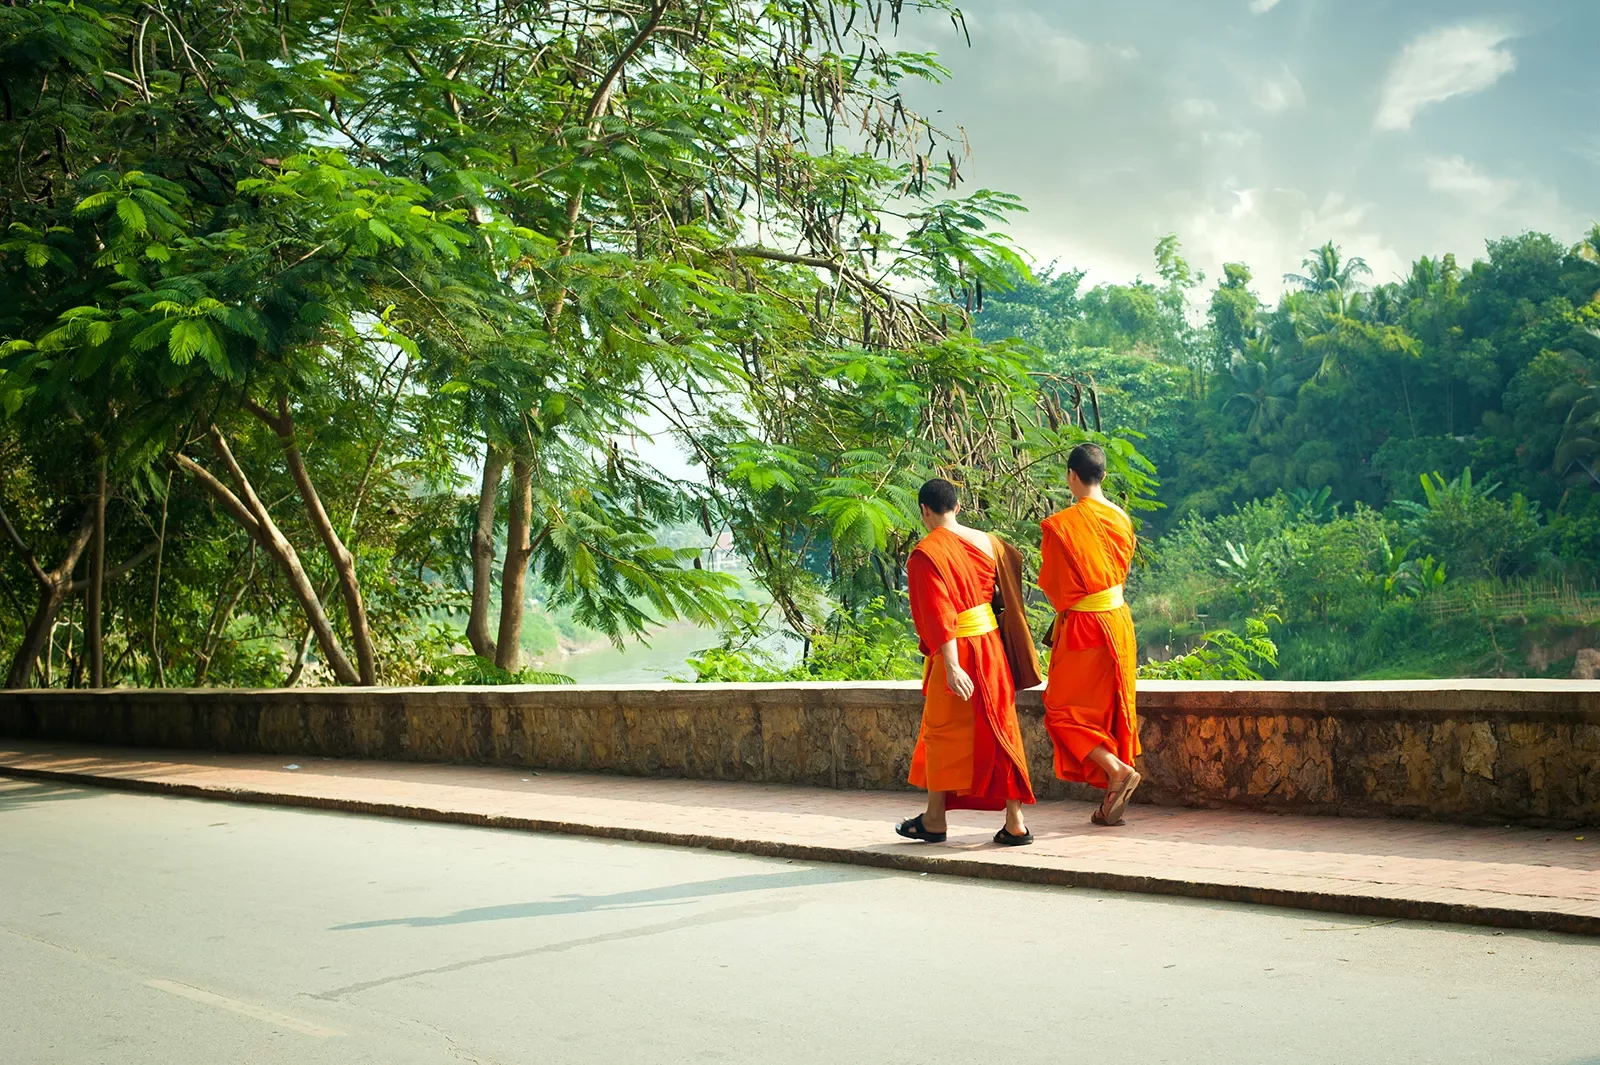 Monks walking along a road in Asia